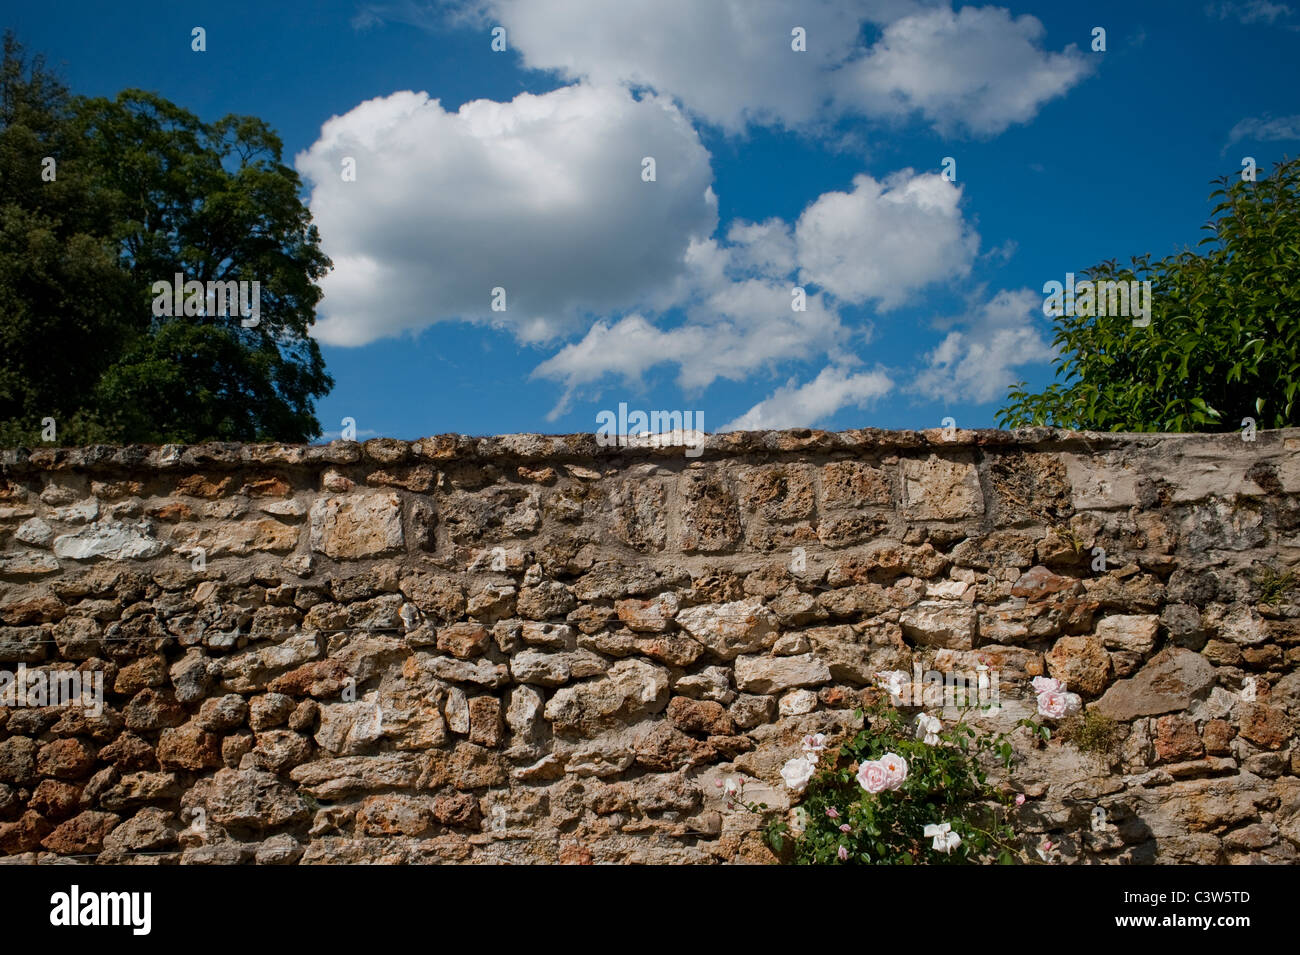 Ver-voiles, France, scènes de parc urbain, 'Parc Balbi', mur de pierre ancien avec nuages dans le ciel, printemps Banque D'Images